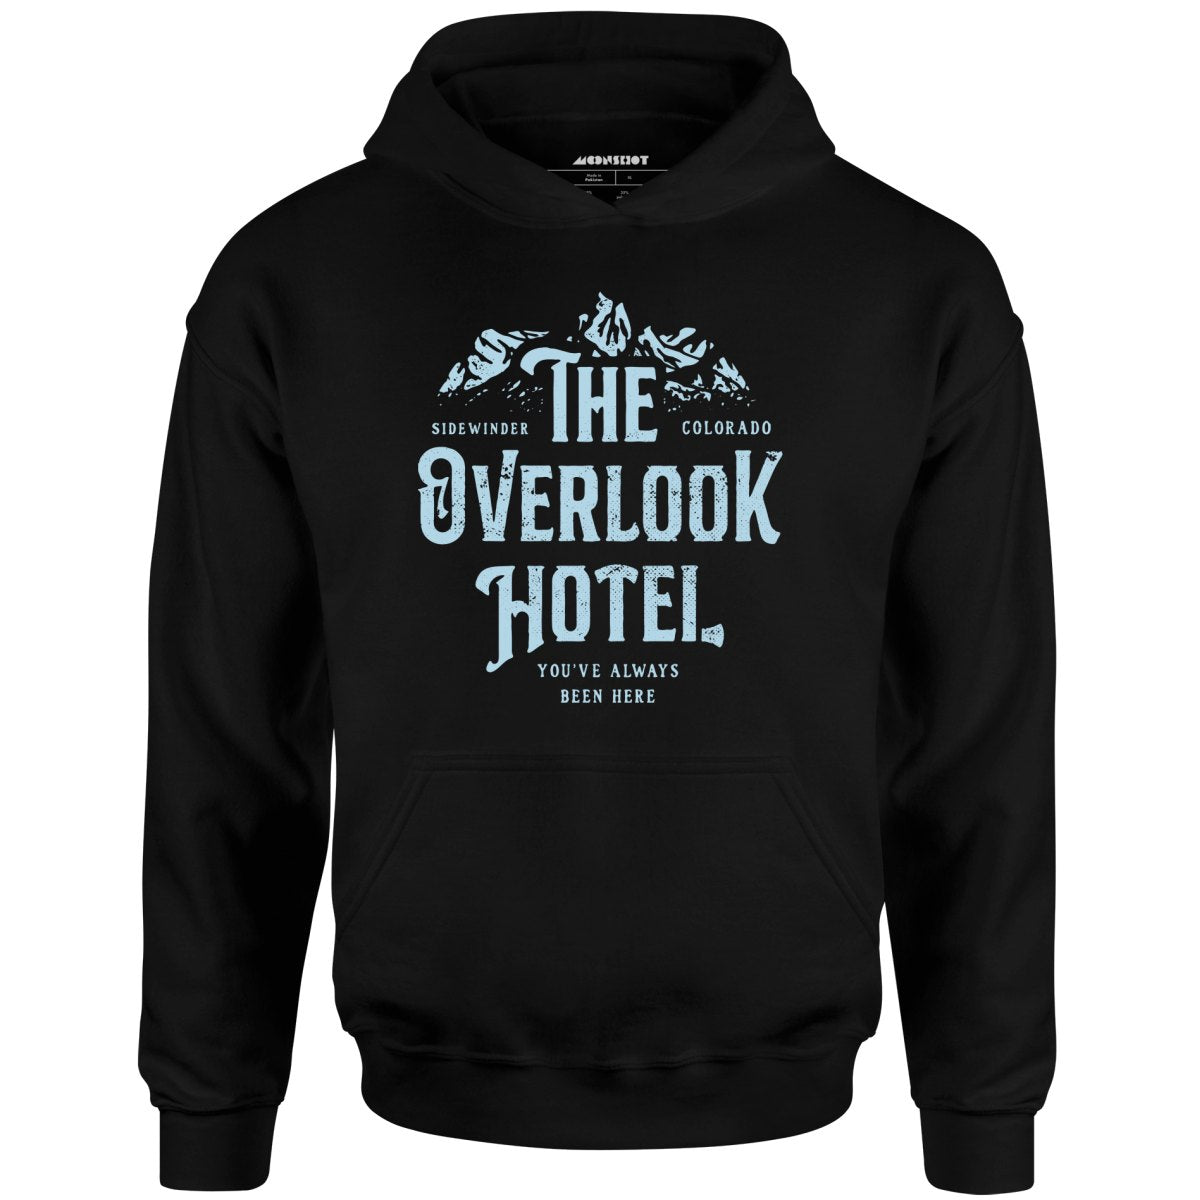 The Overlook Hotel - Unisex Hoodie